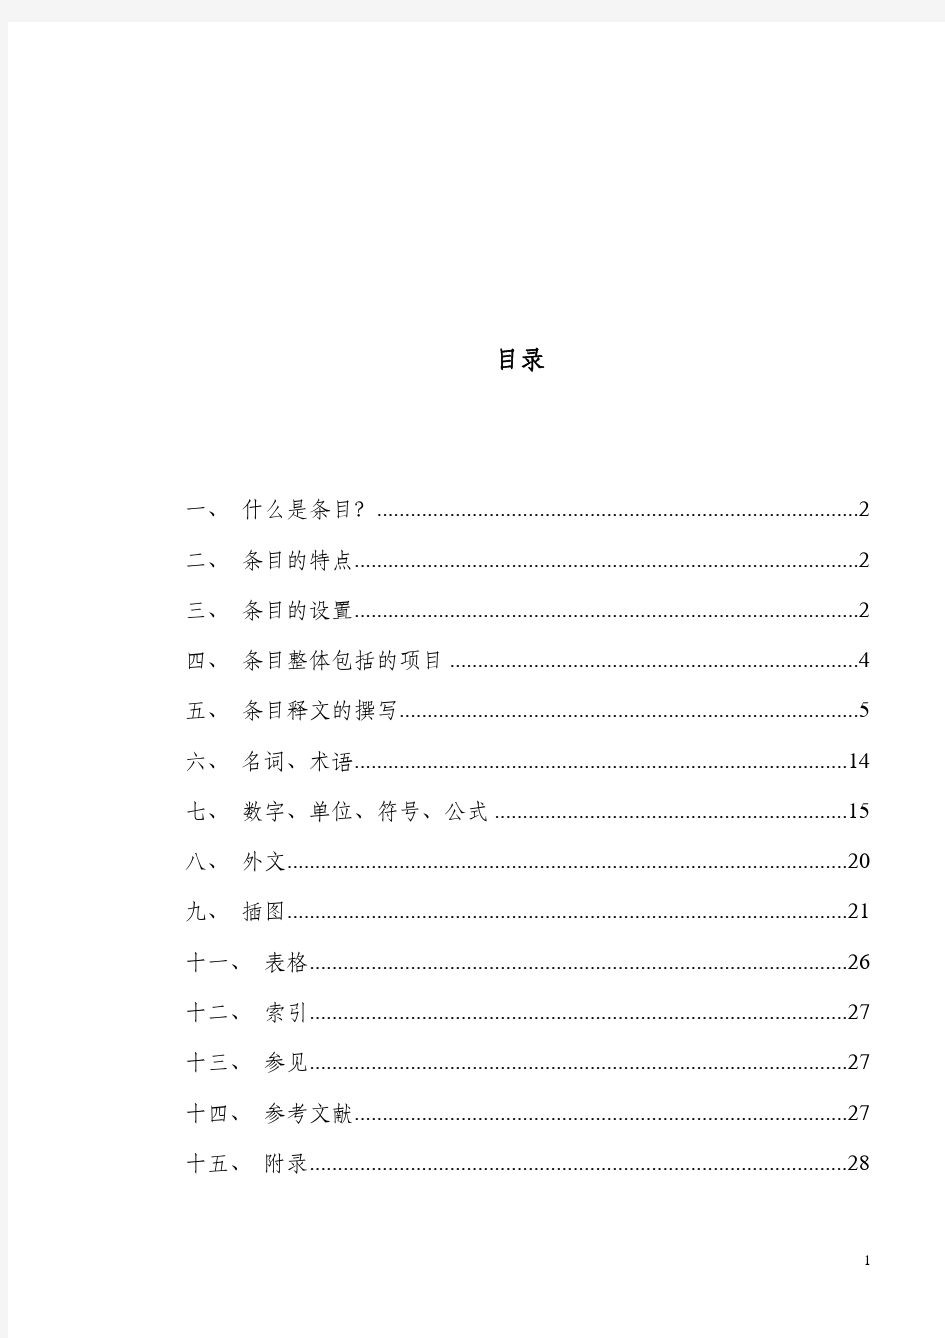 中华医学百科全书条目编写细则